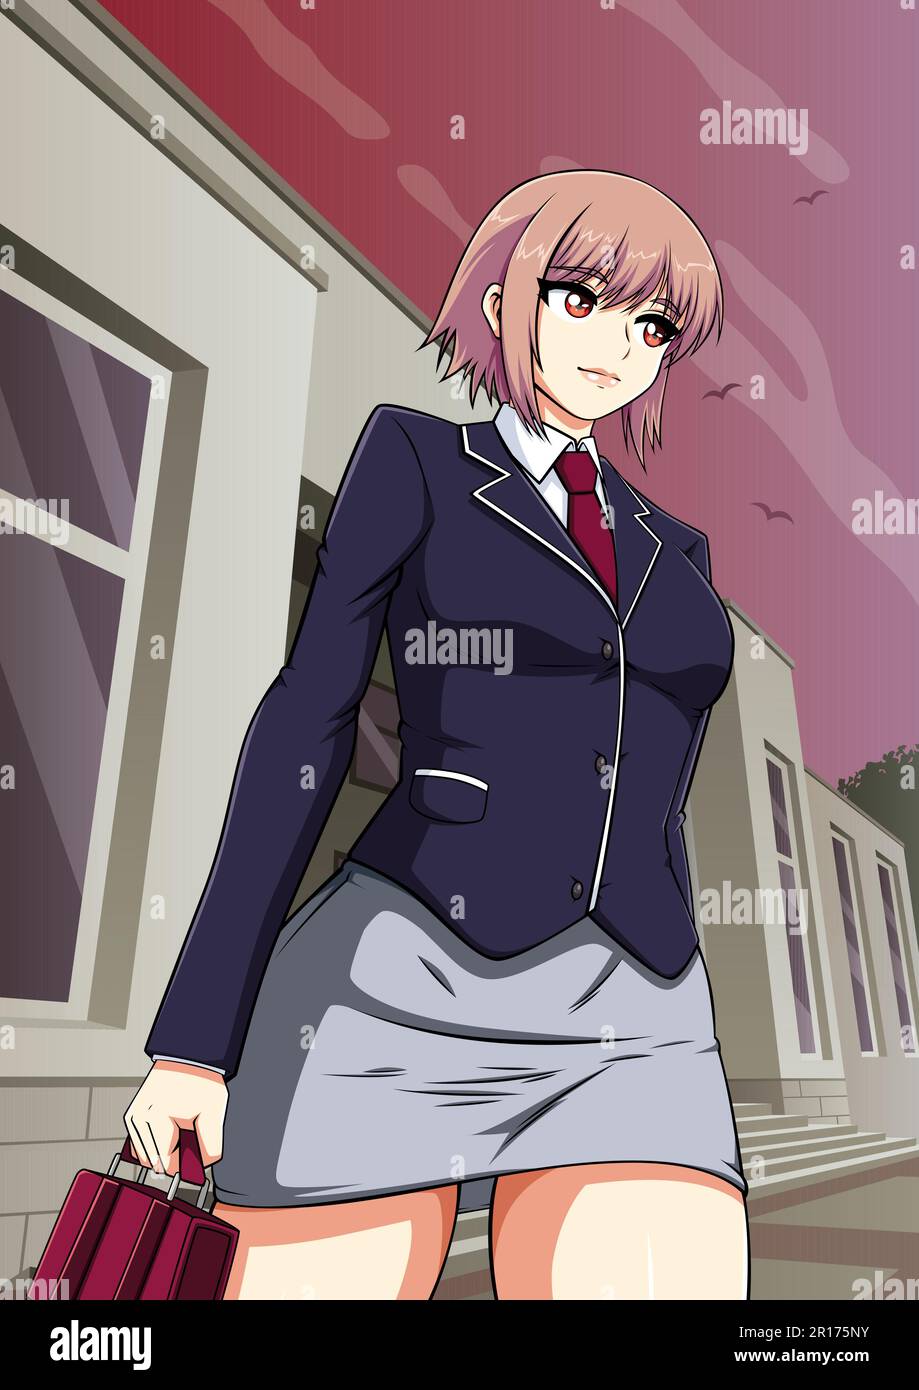 Anime Manga Schoolgirl Stock Vector